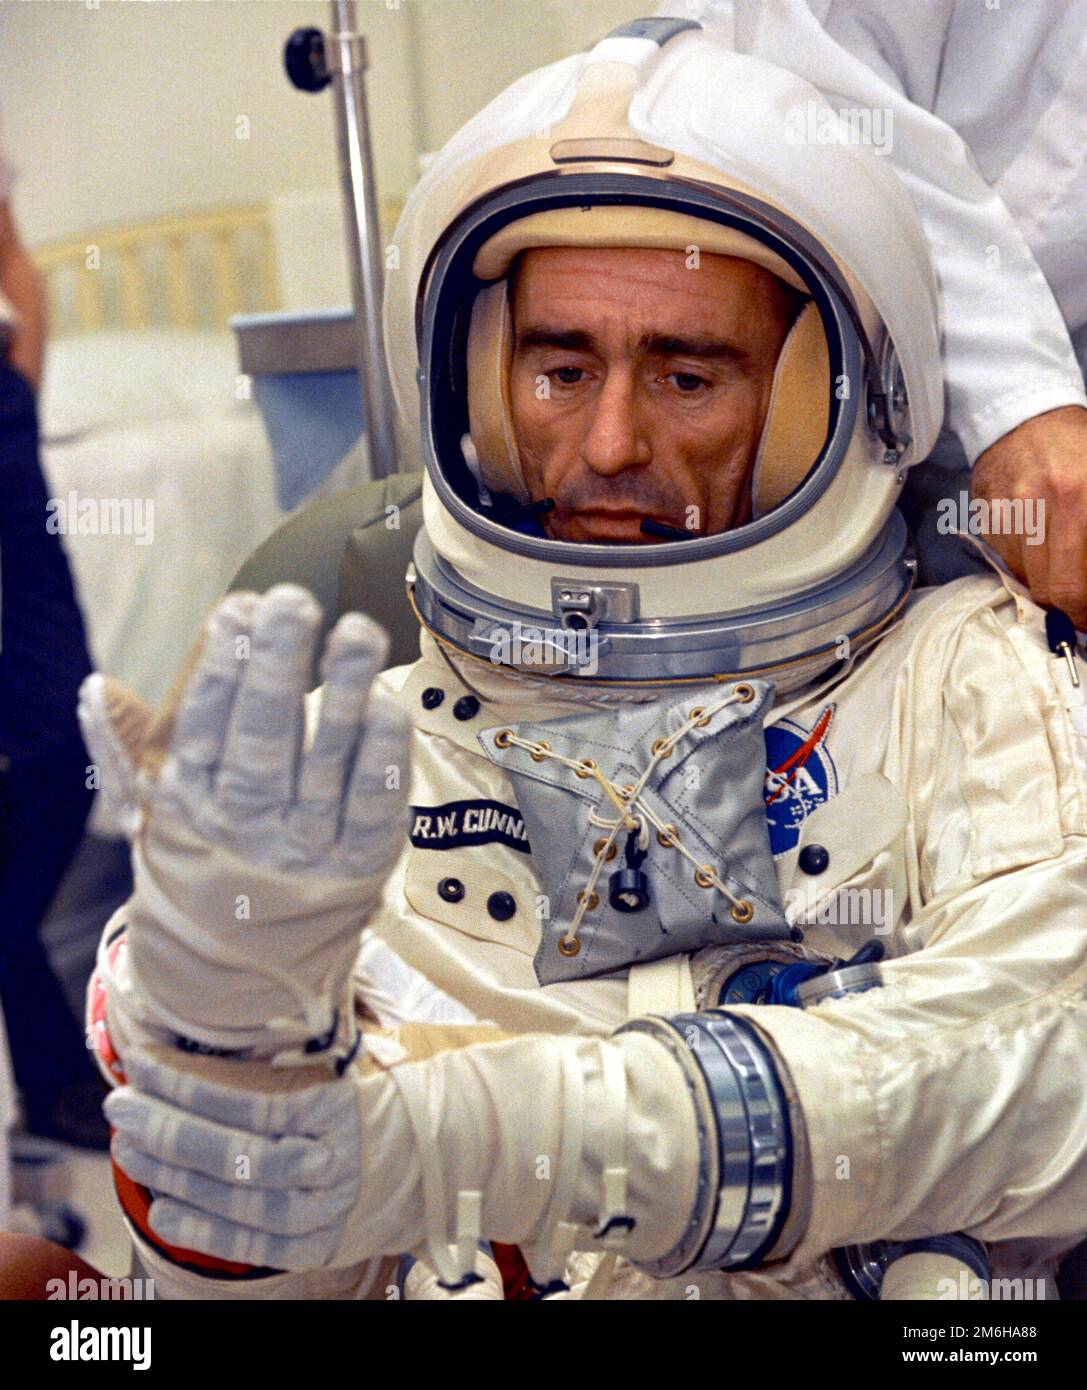 Houston, États-Unis. 29 décembre 1966. Houston, États-Unis. 29 décembre 1966. Walter Cunningham, astronaute de la NASA, pilote de module lunaire pour la mission Apollo 7, s'est lancé pour un test en chambre d'altitude au centre spatial Johnson, à 29 décembre 1966, à Houston, au Texas. Cunningham meurt 4 janvier 2023 à l'âge de 90 ans, le dernier membre survivant de la mission Apollo 7 de la NASA. Banque D'Images